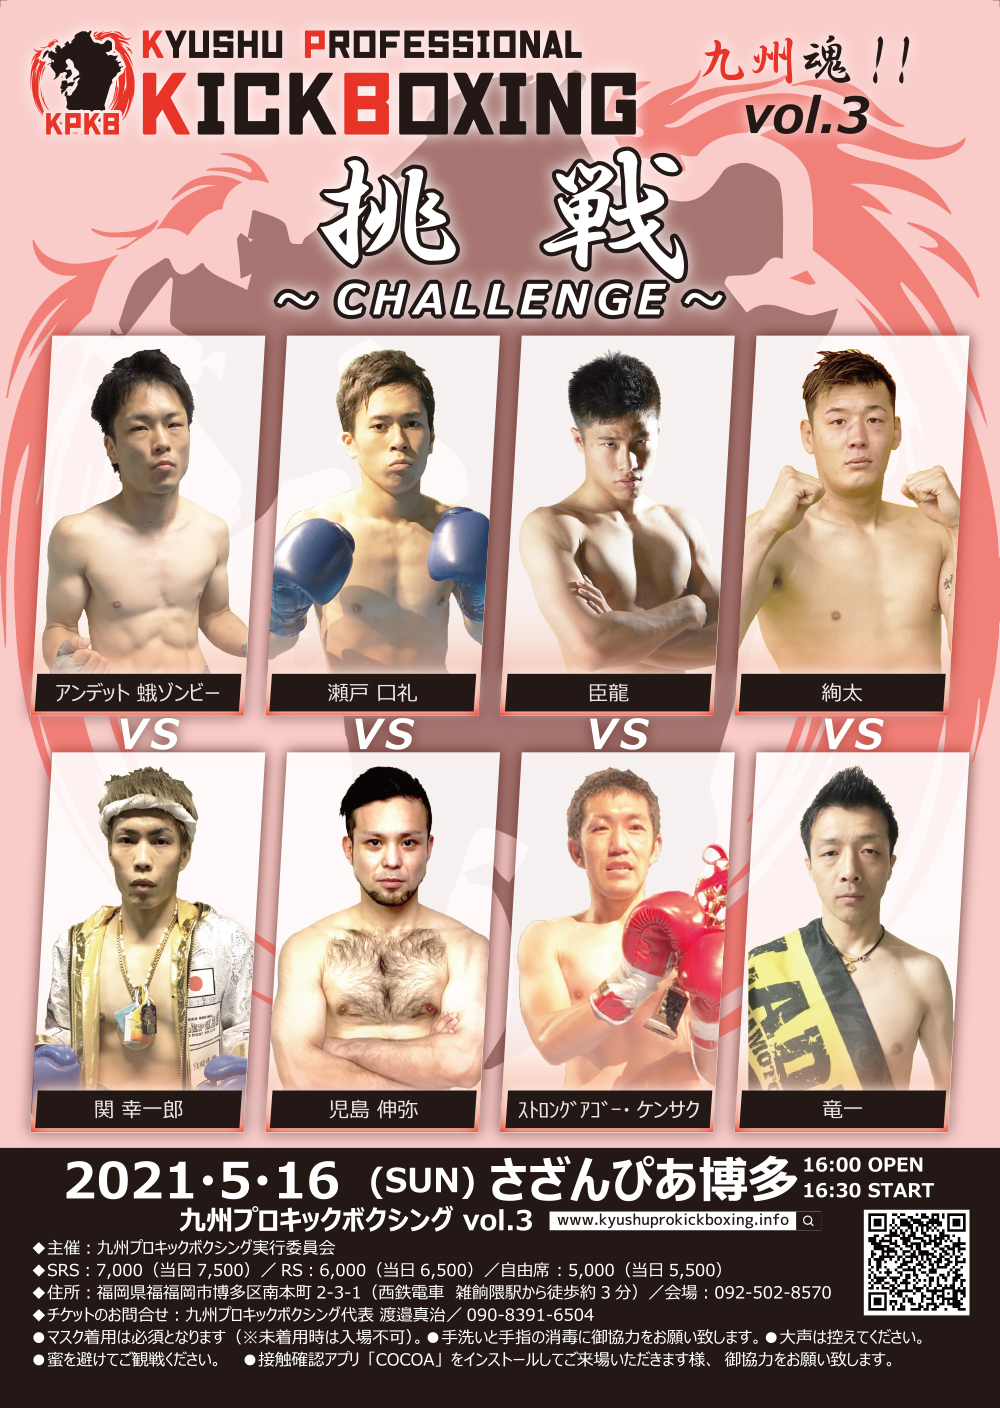 21年5月16日九州プロキックボクシングvol 3スケジュール Fighters Spirits Magazine